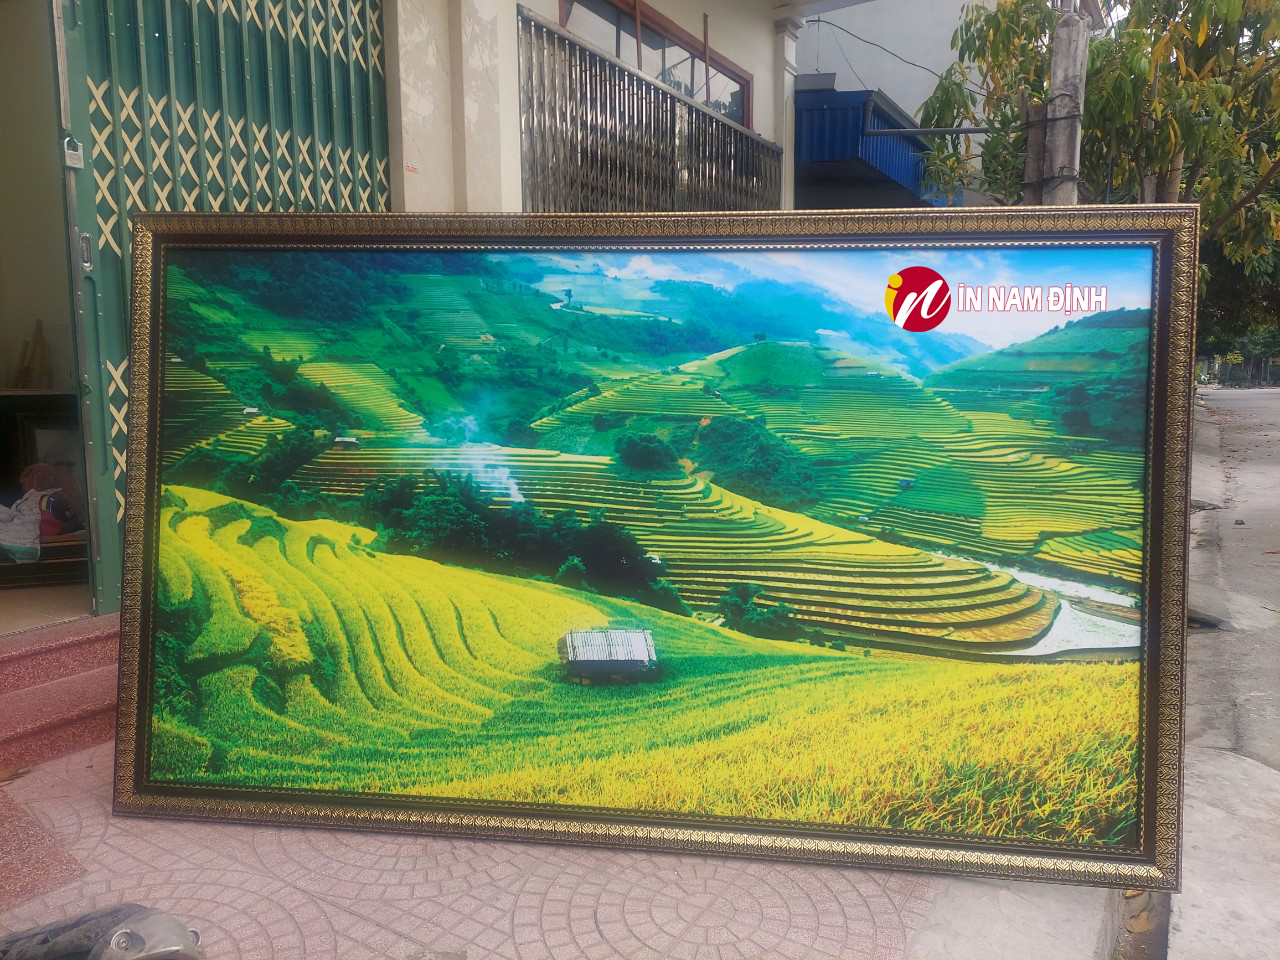 Tranh ruộng bậc thang: Thể hiện niềm tự hào về cảnh đẹp của quê hương đất nước Việt Nam